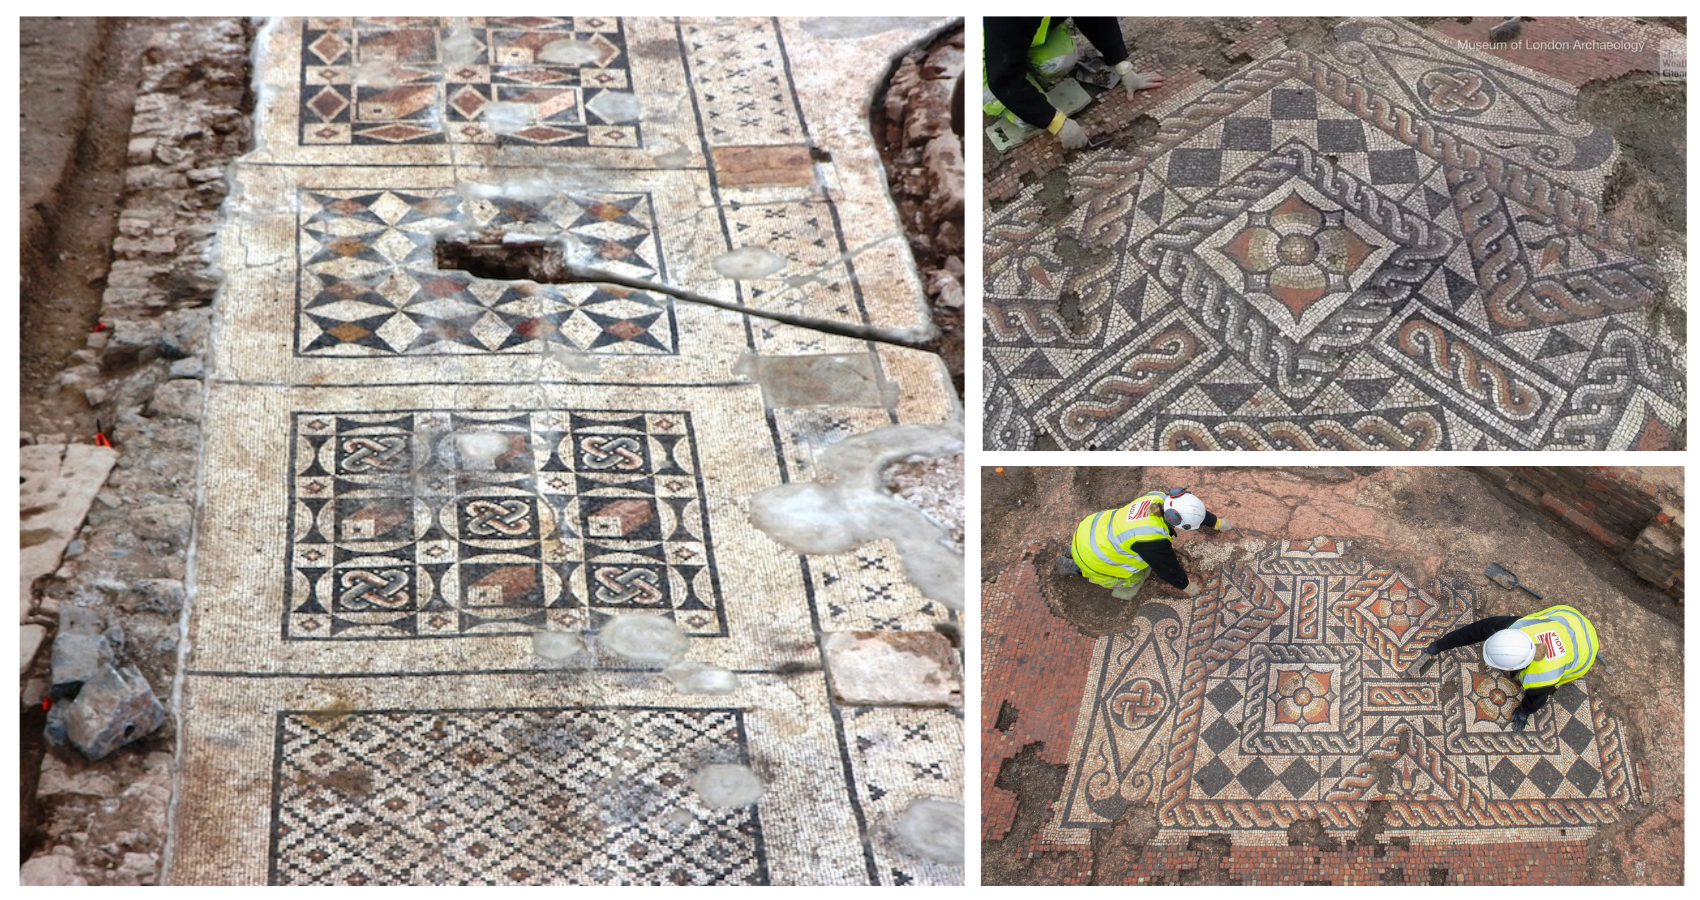 Enormous Roman mosaic found under farmer’s field